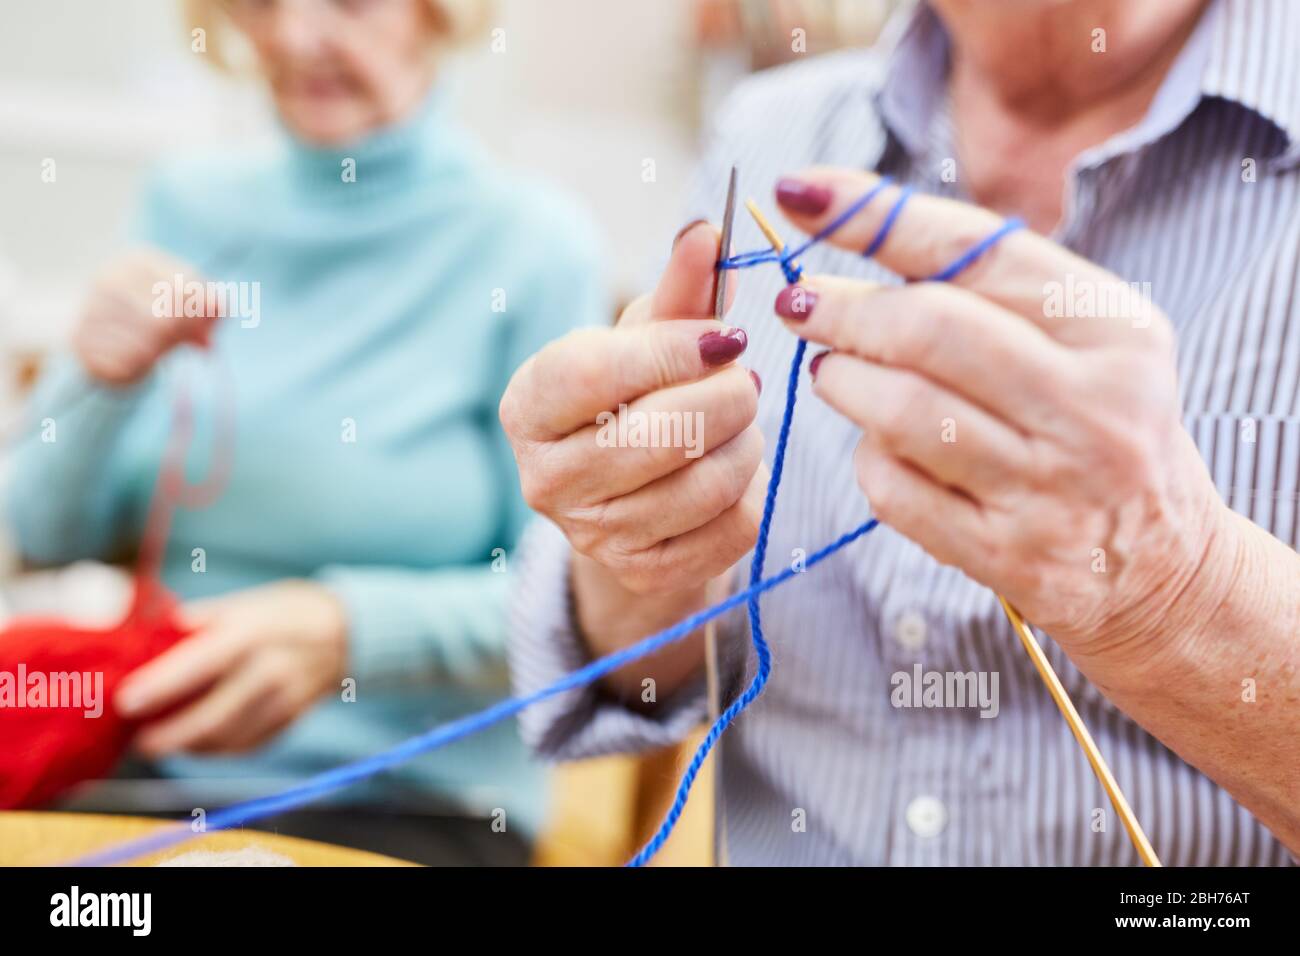 Los ancianos aprenden a ganchillo o a coser en un club de tejer o taller de artesanía Foto de stock